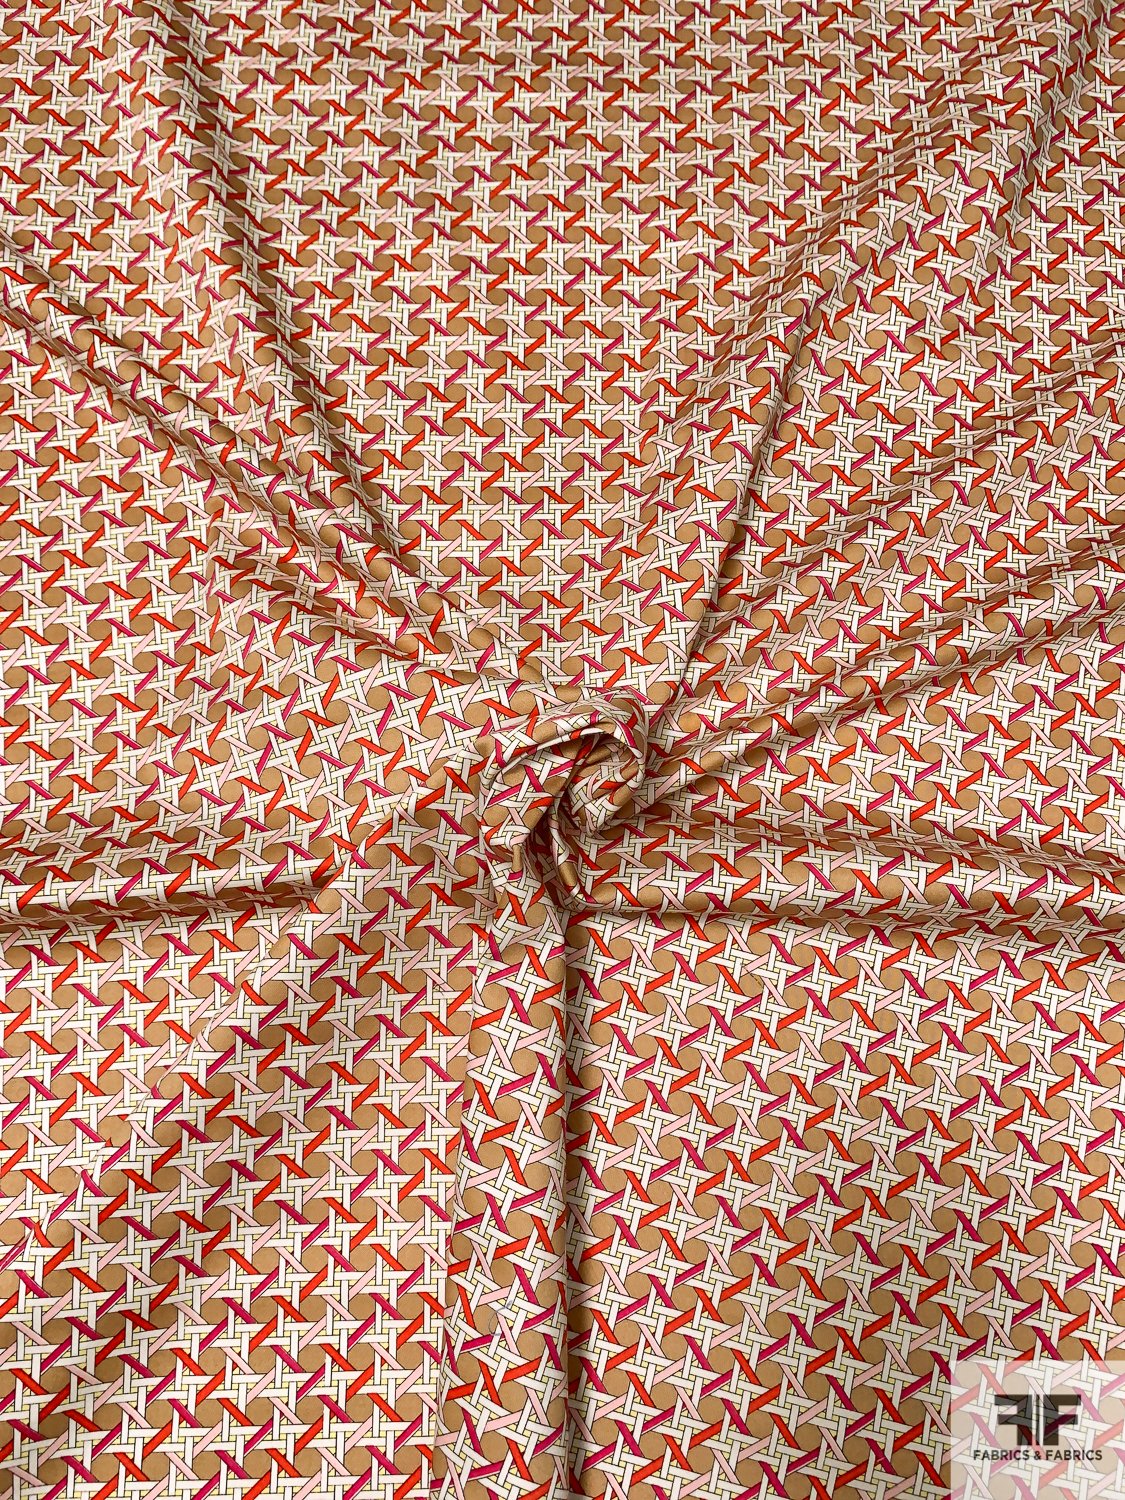 Interlocking Basketweave-Like Printed Stretch Cotton Sateen - Tan / White / Magenta / Red